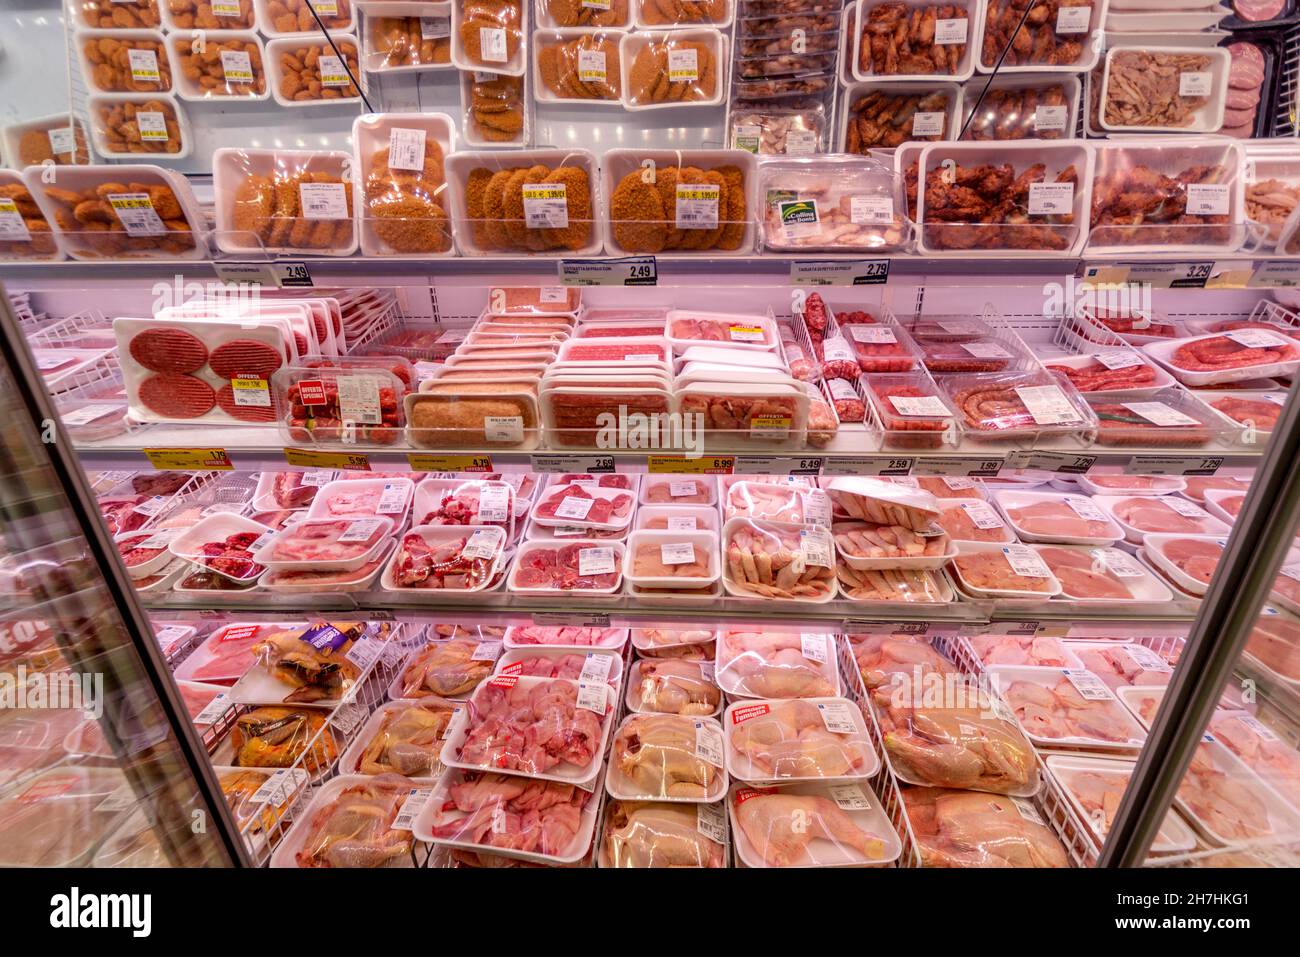 Fossano, Italien - 24. Oktober 2021: Übersicht über das Kühlfach des verpackten Fleisches verschiedener Arten im italienischen Supermarkt Stockfoto